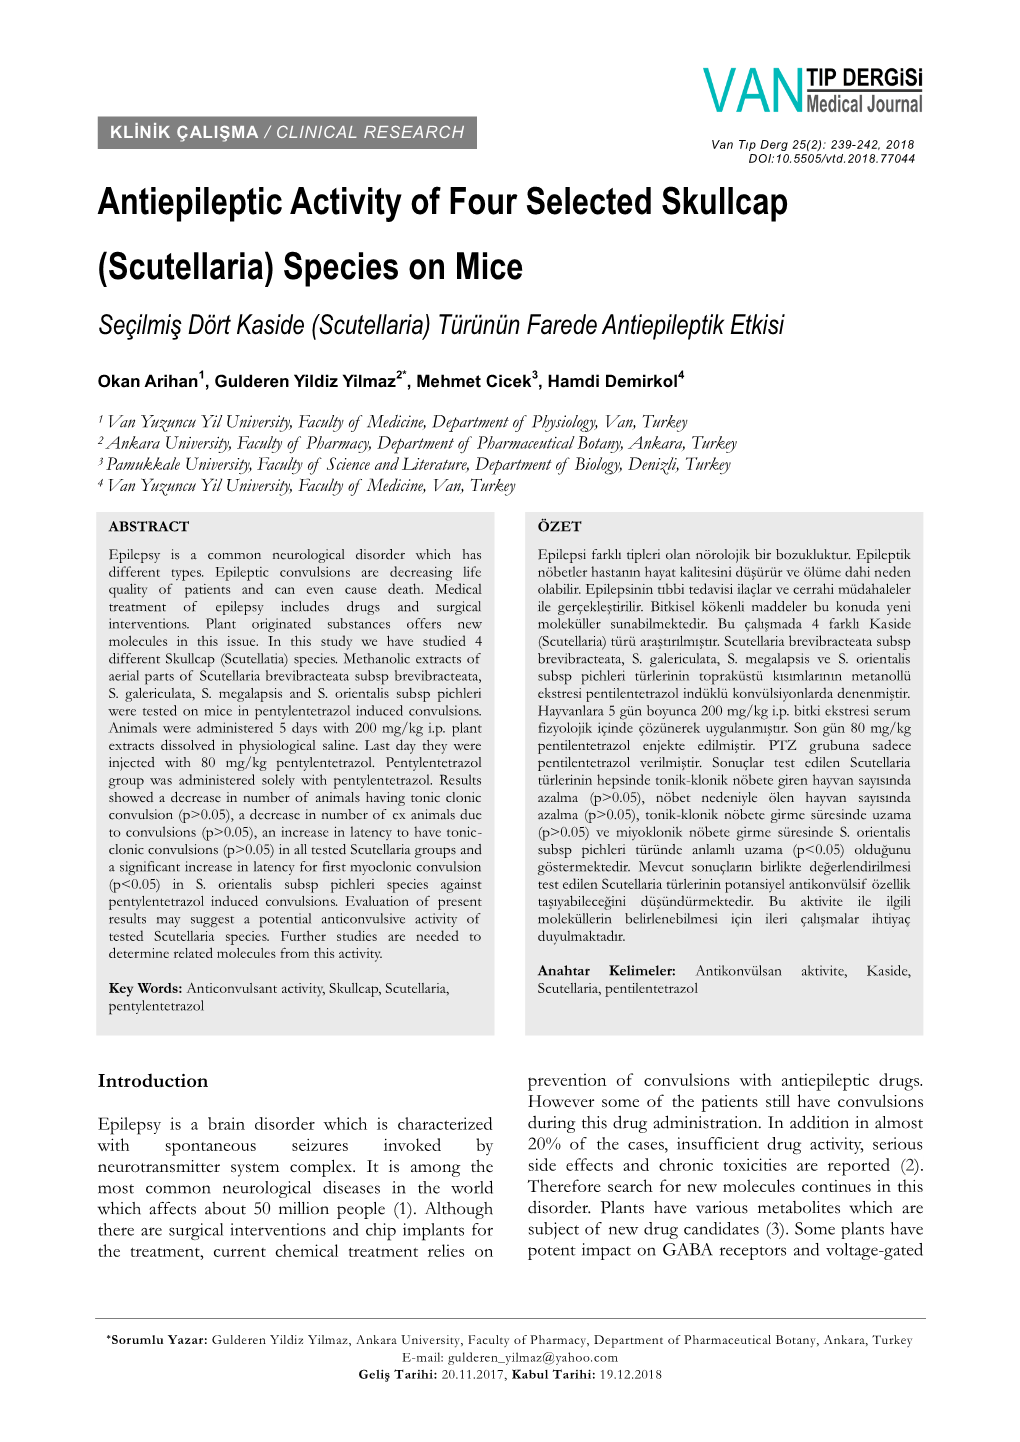 Antiepileptic Activity of Four Selected Skullcap (Scutellaria) Species on Mice Seçilmiş Dört Kaside (Scutellaria) Türünün Farede Antiepileptik Etkisi